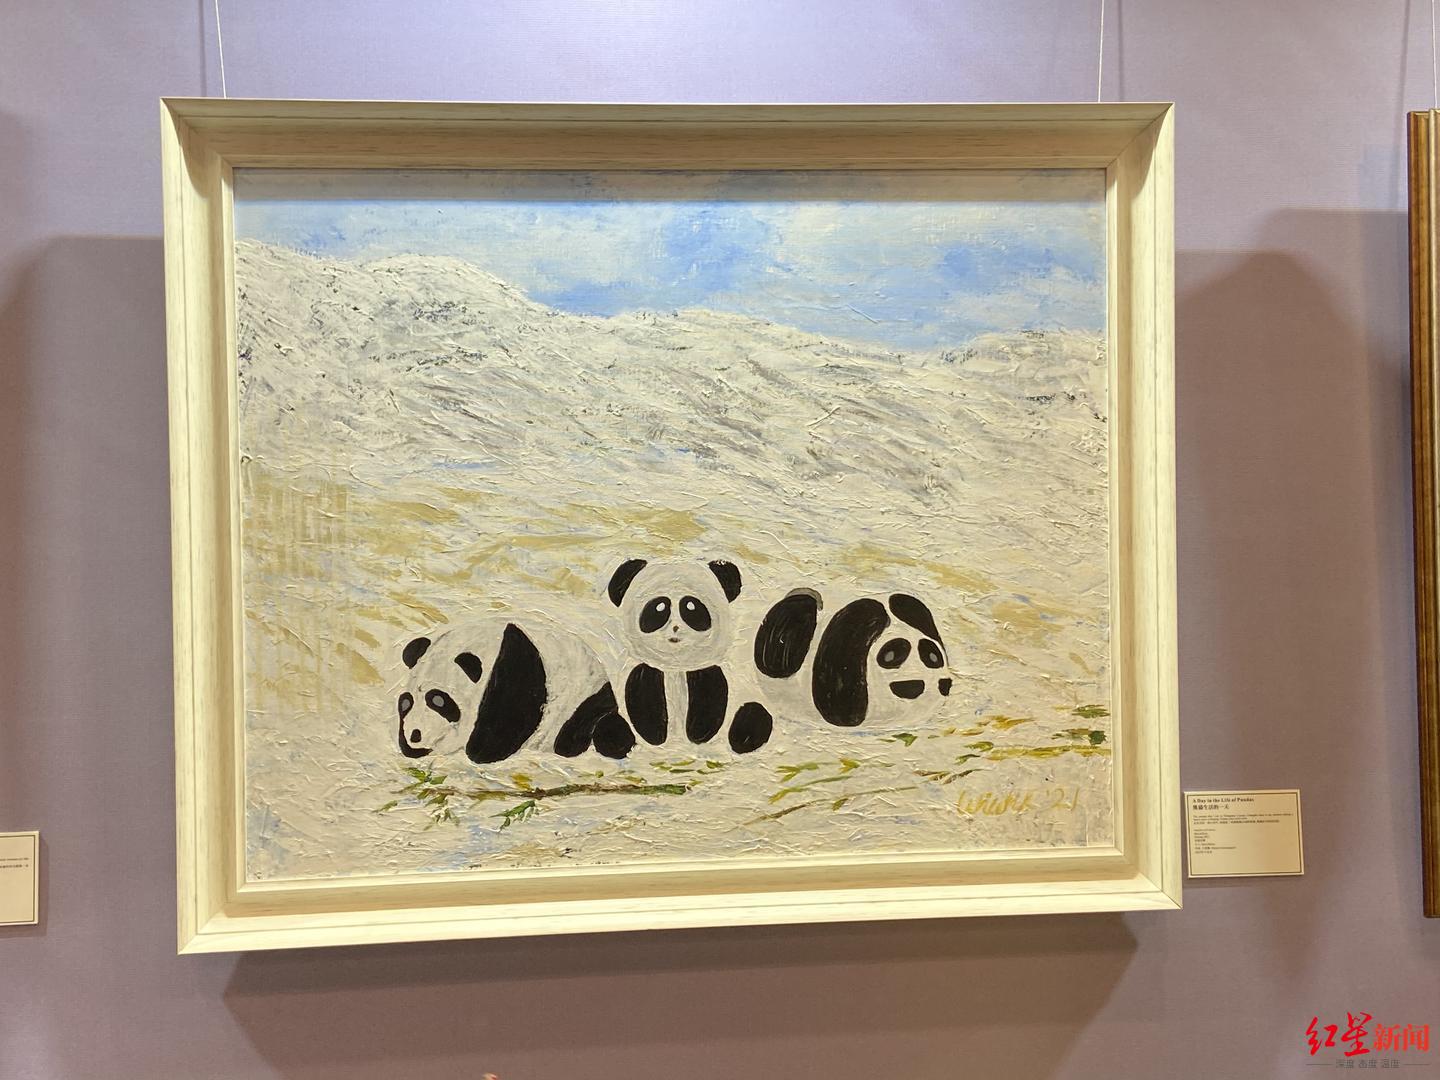 ▲印尼驻华大使夫人艾茜薇以成都大熊猫为原型创作的绘画作品